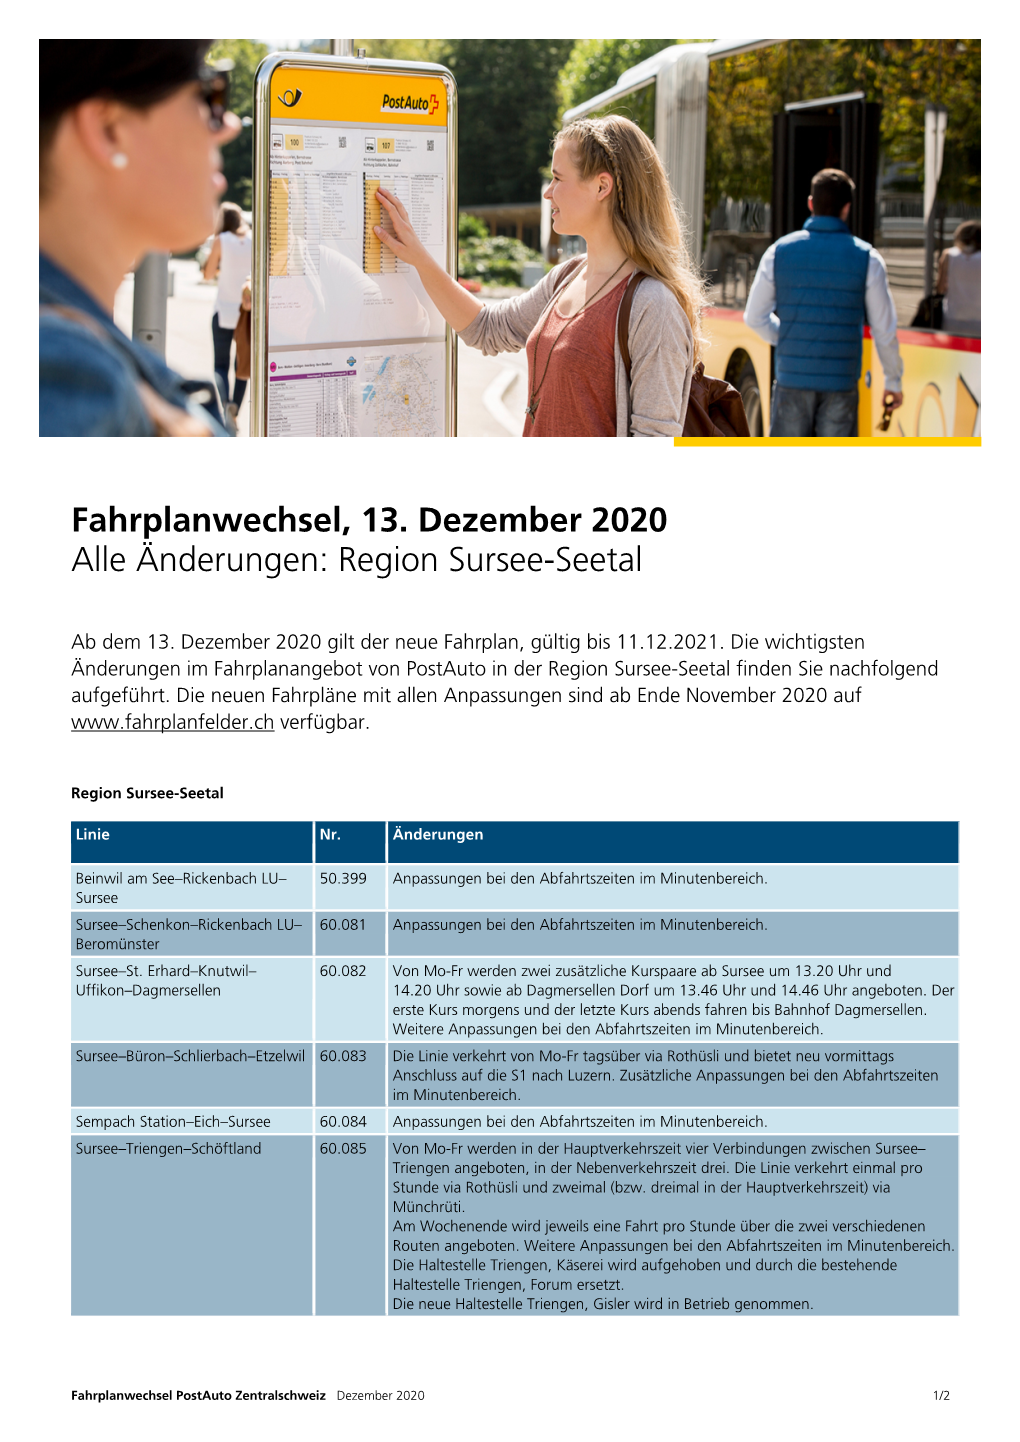 Fahrplanwechsel, 13. Dezember 2020 Alle Änderungen: Region Sursee-Seetal